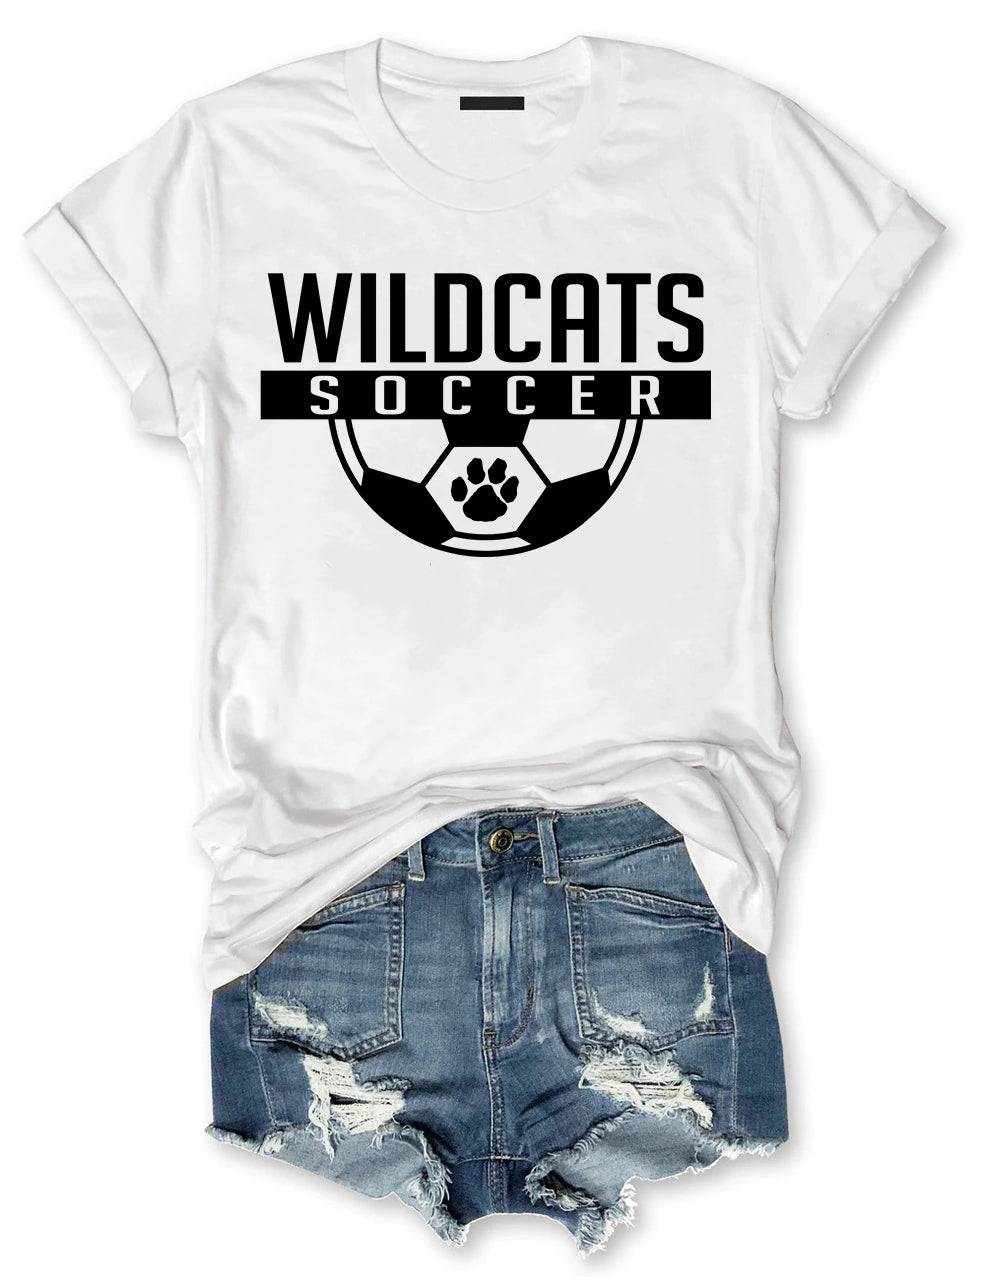 Wildcat Soccer T-shirt